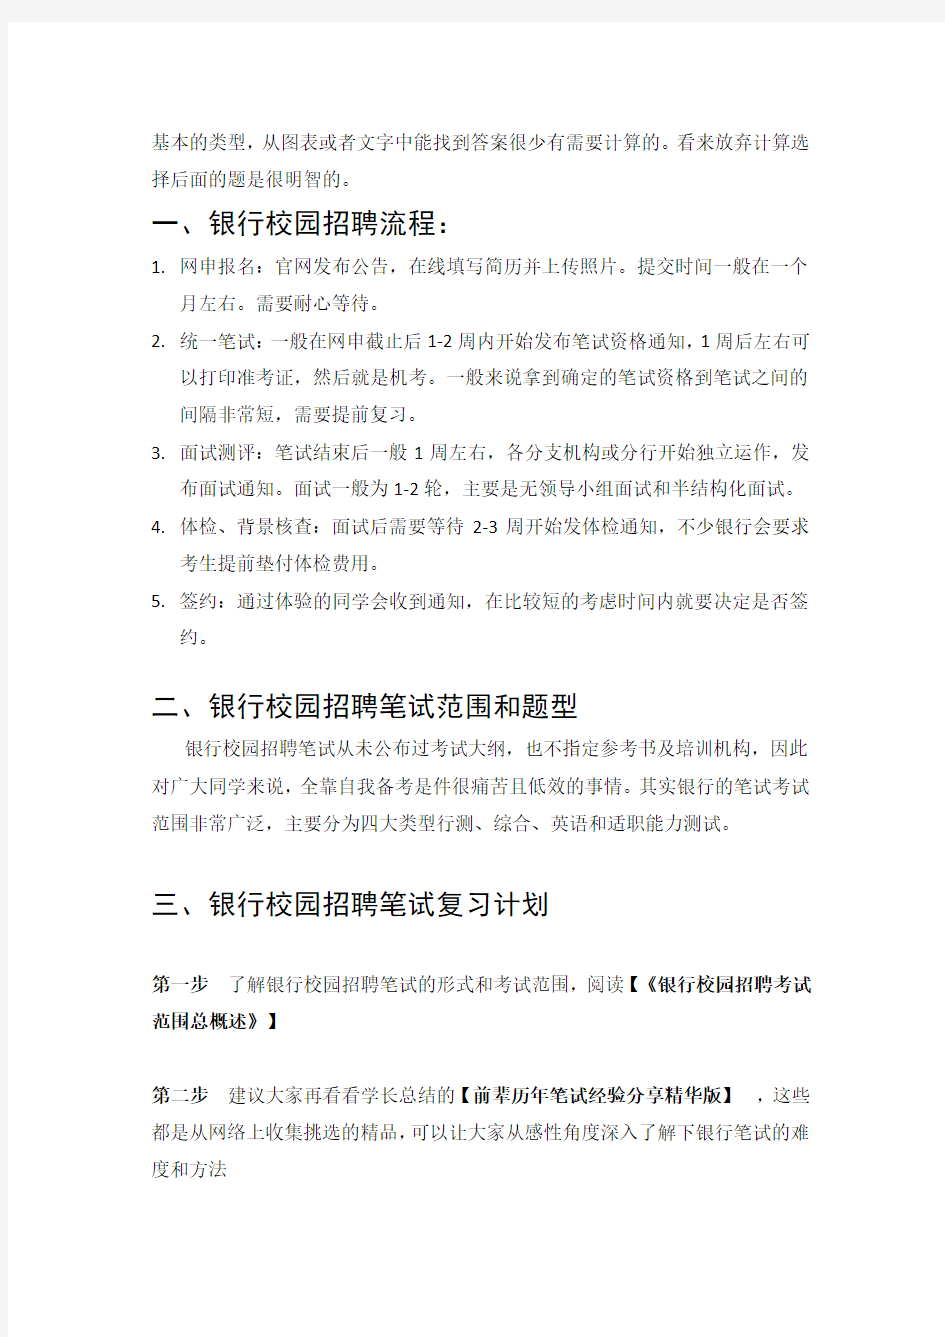 中国银行招聘考试笔试题目试卷--历年考试真题  最新